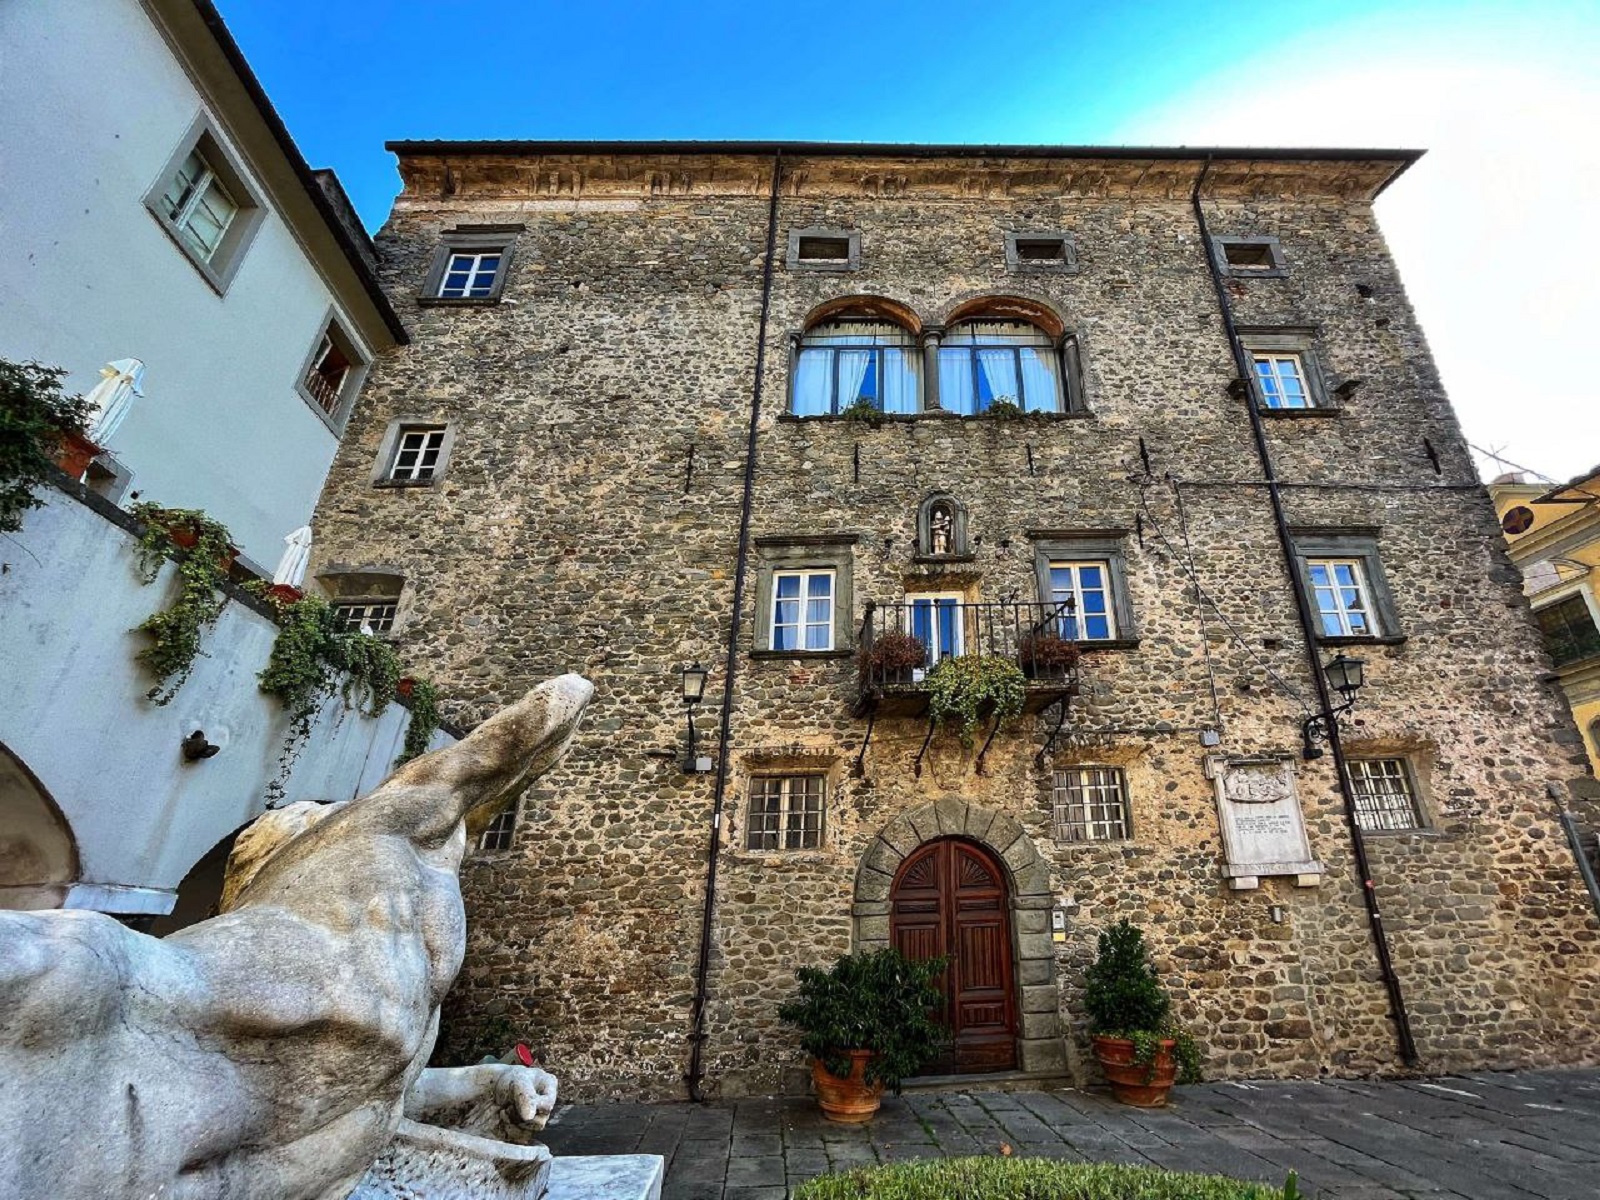 Le château Malaspina de Licciana Nardi